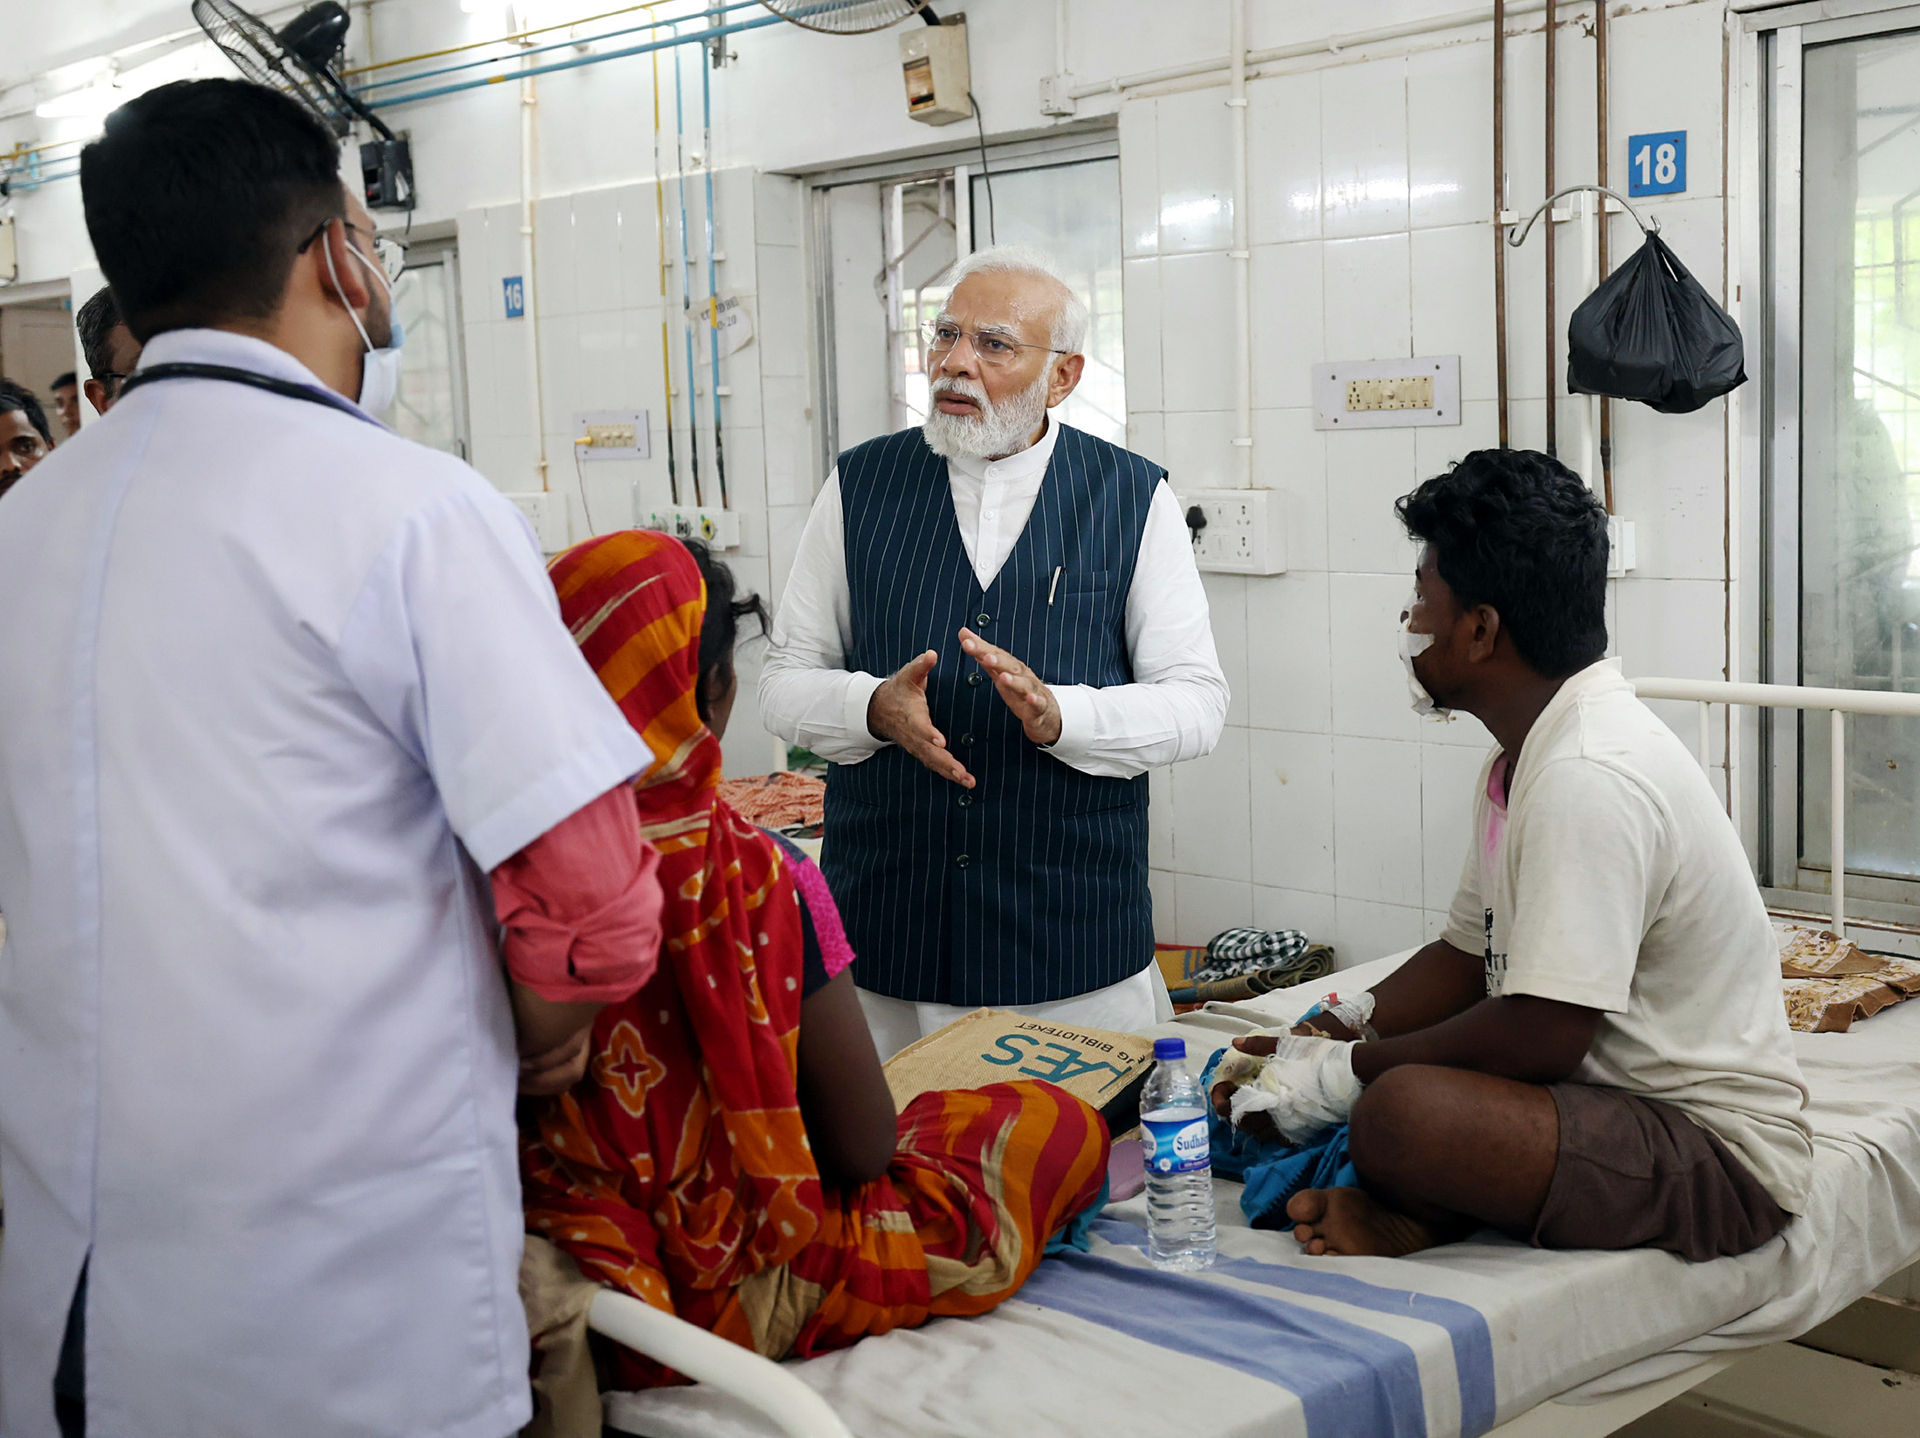 Thủ tướng Ấn Độ Narendra Modi tới bệnh viện thăm hỏi những người bị thương trong vụ tai nạn. Ảnh: ANI